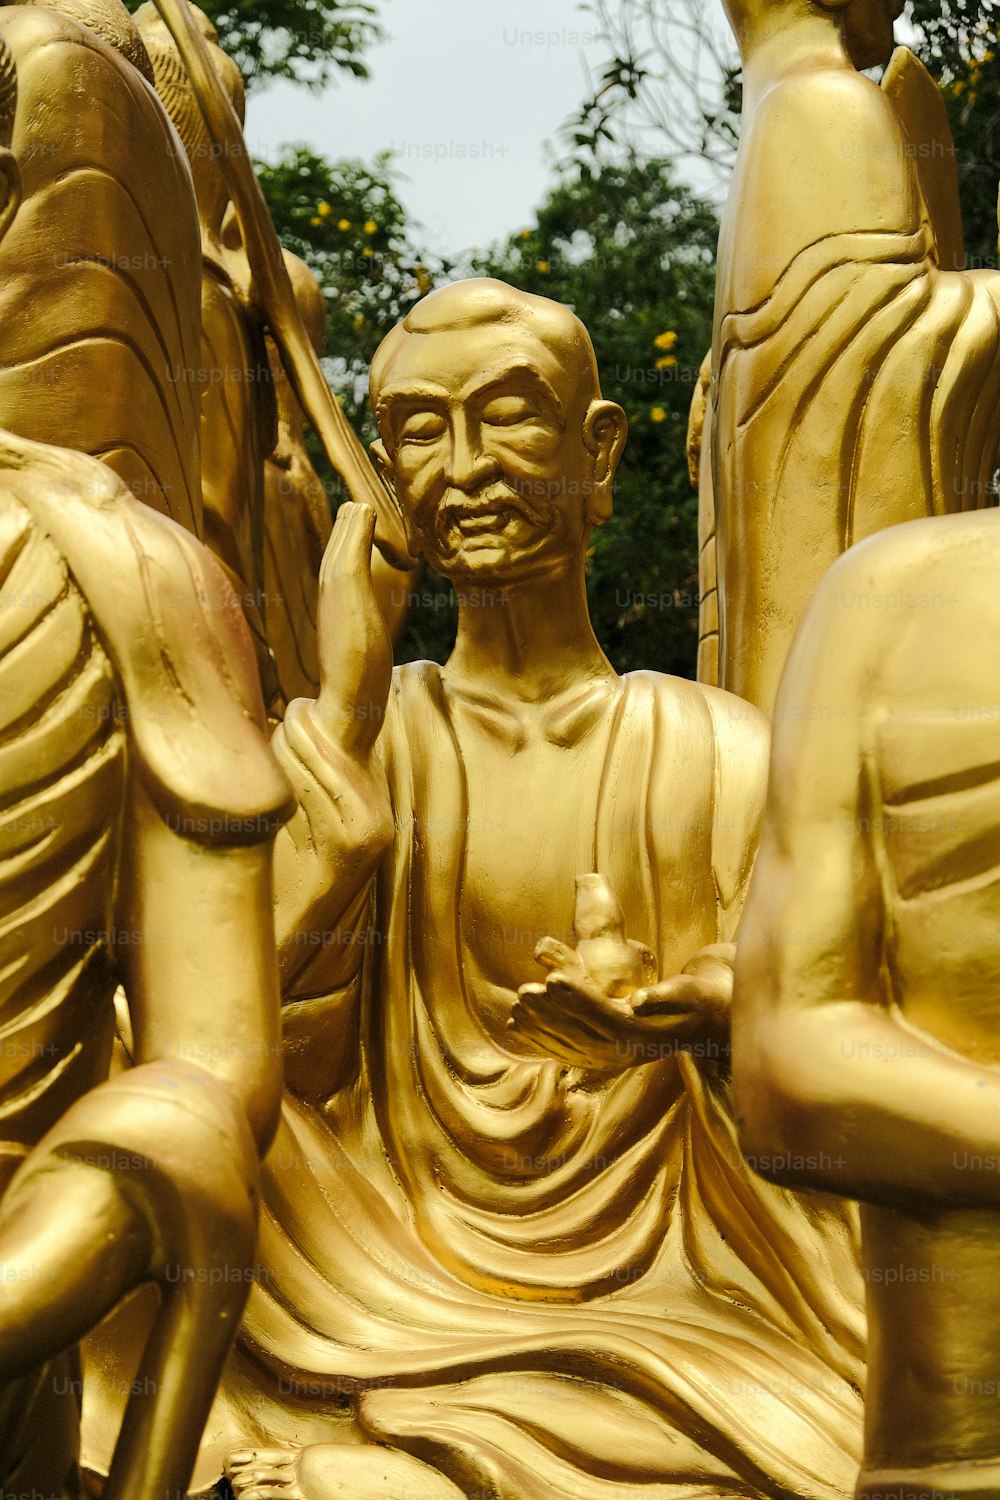 Una estatua dorada de Budas sentados frente a un árbol